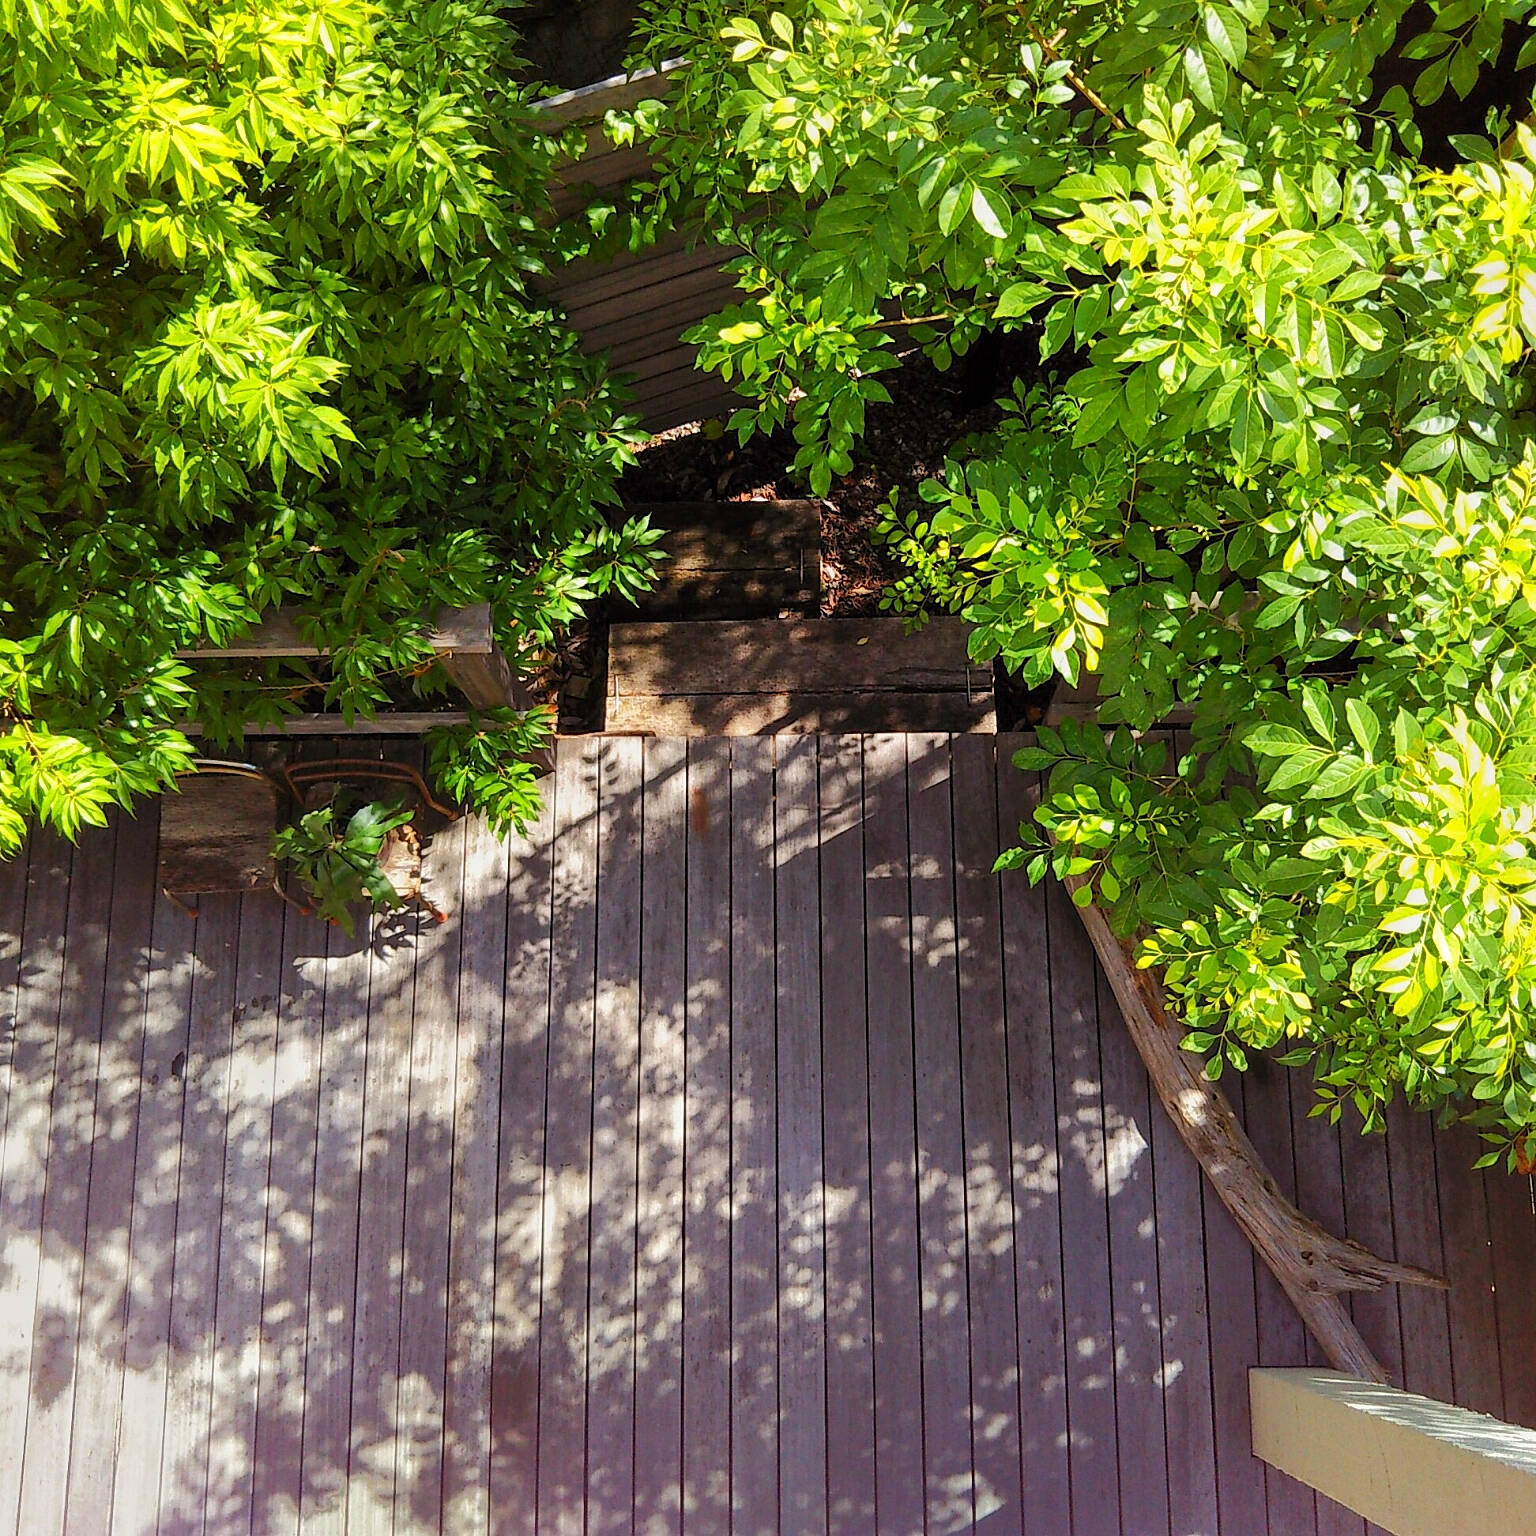 木づかいアイデア賞 petitesplumesさん（Room No. 5279629）緑に囲まれたウッドデッキにキラキラと落ちる木漏れ日